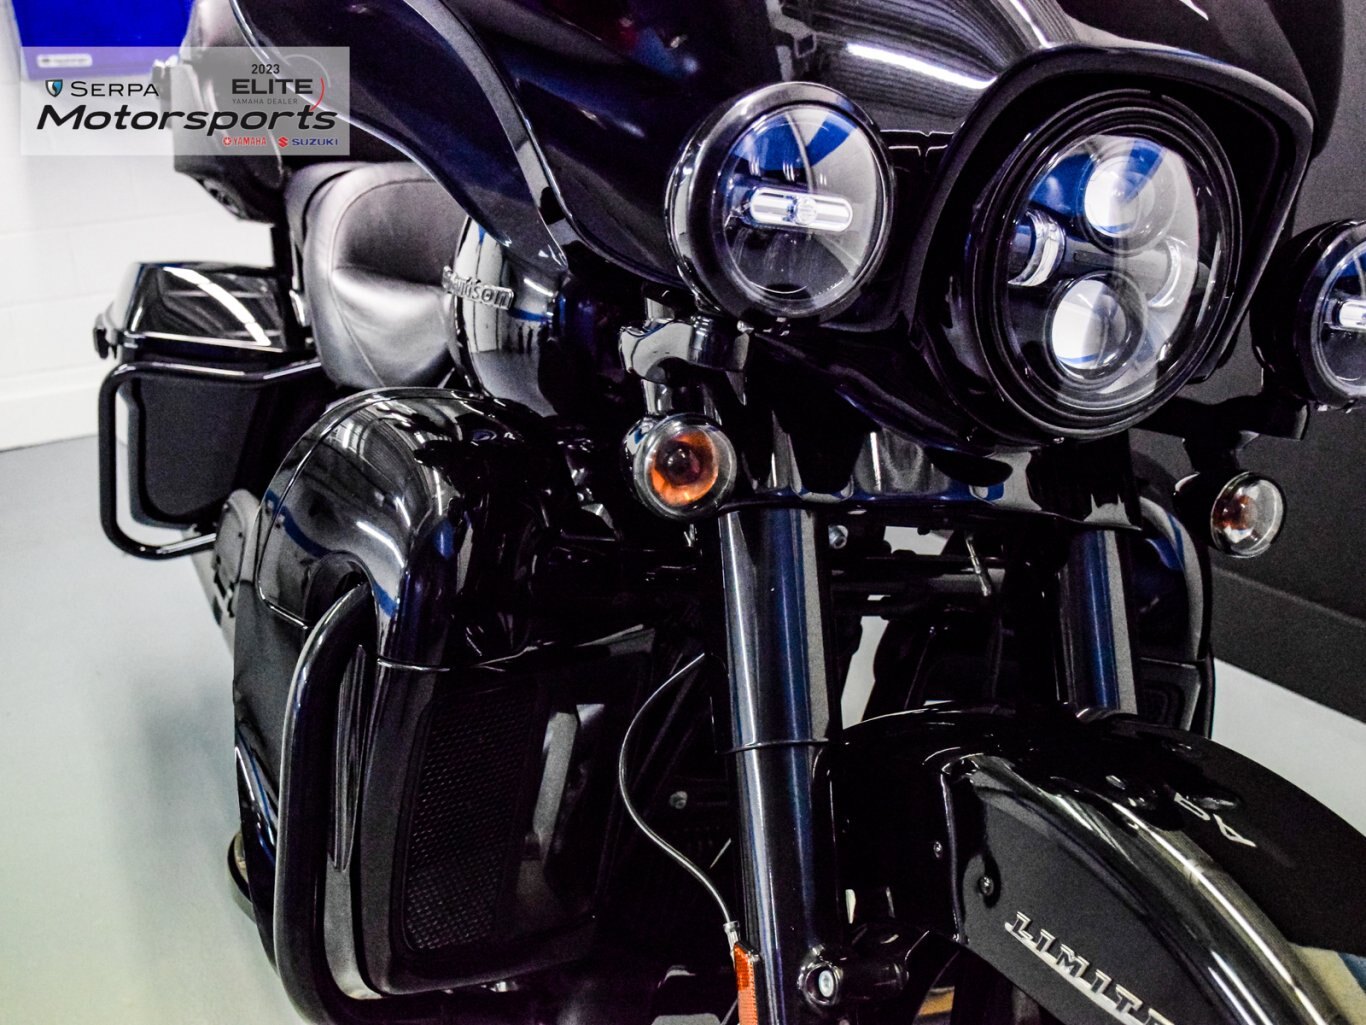 2022 Harley Davidson FLHTK Ultra Limited